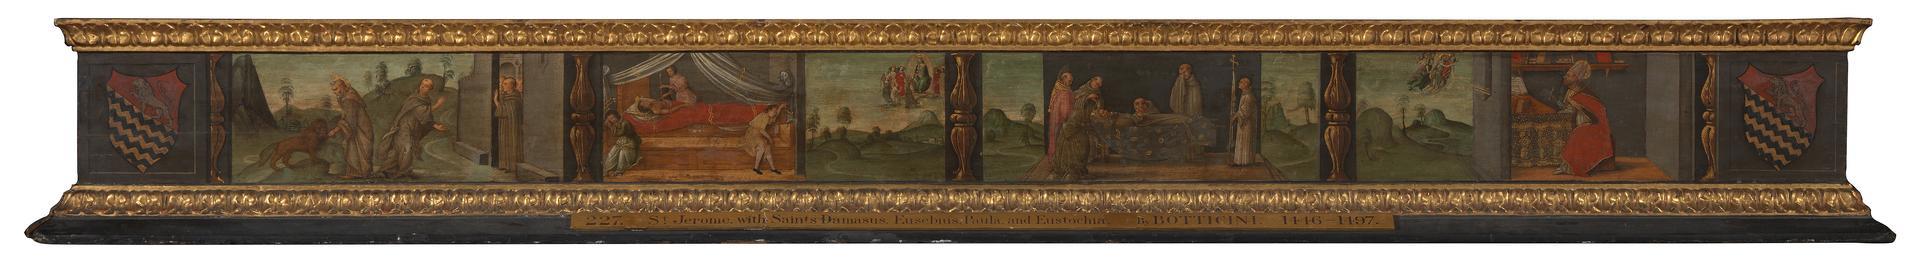 Scenes from the Life of Saint Jerome: Predella by Francesco Botticini